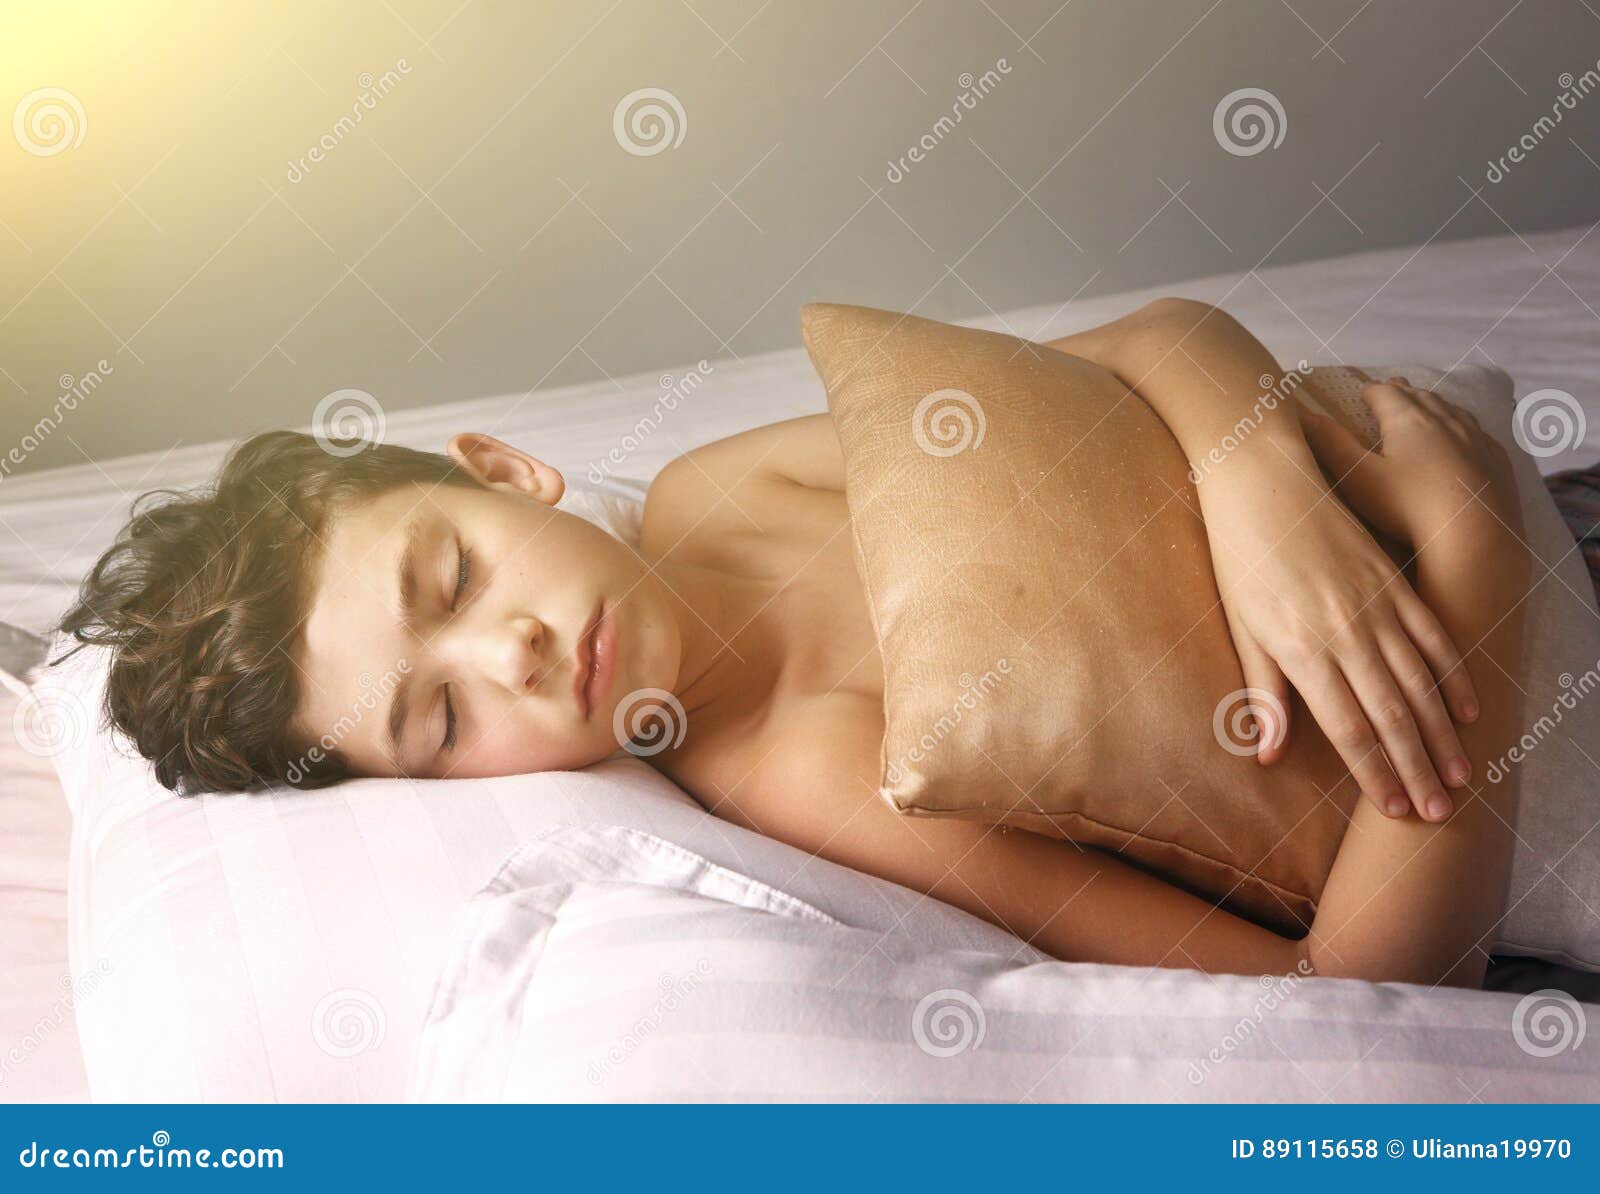 Teen Nude Sleeping Photos 86